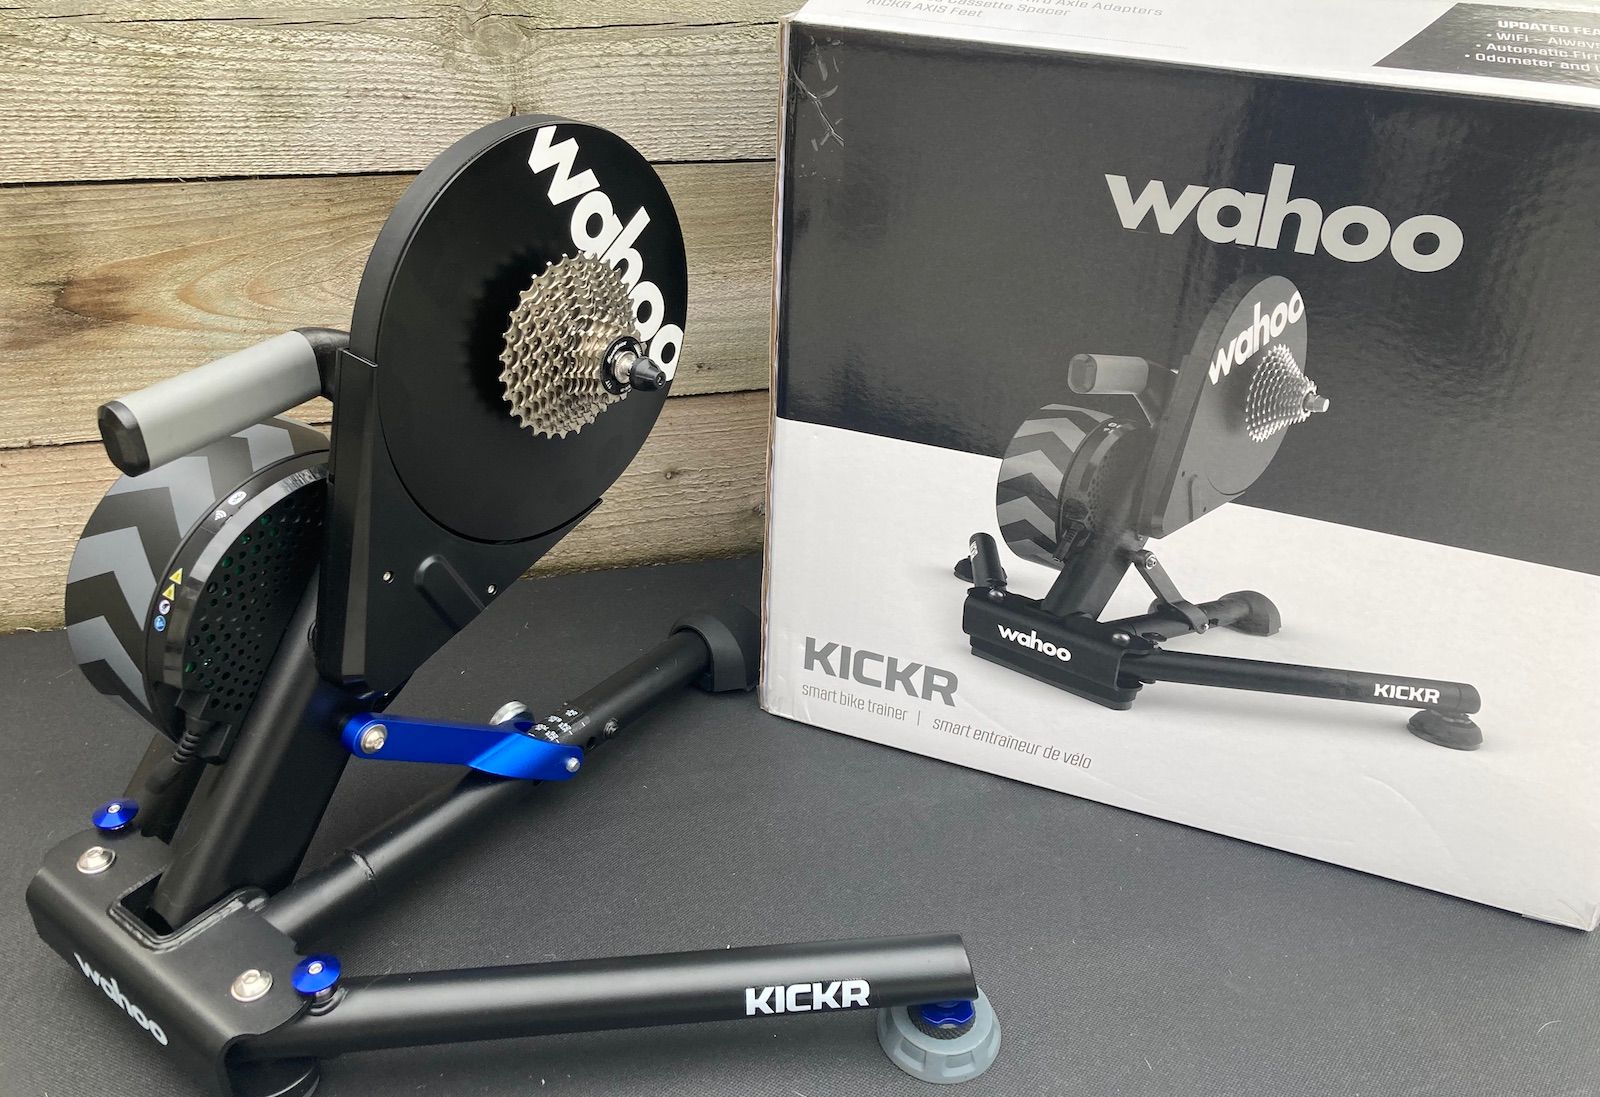 Wahoo Kickr V6 Review